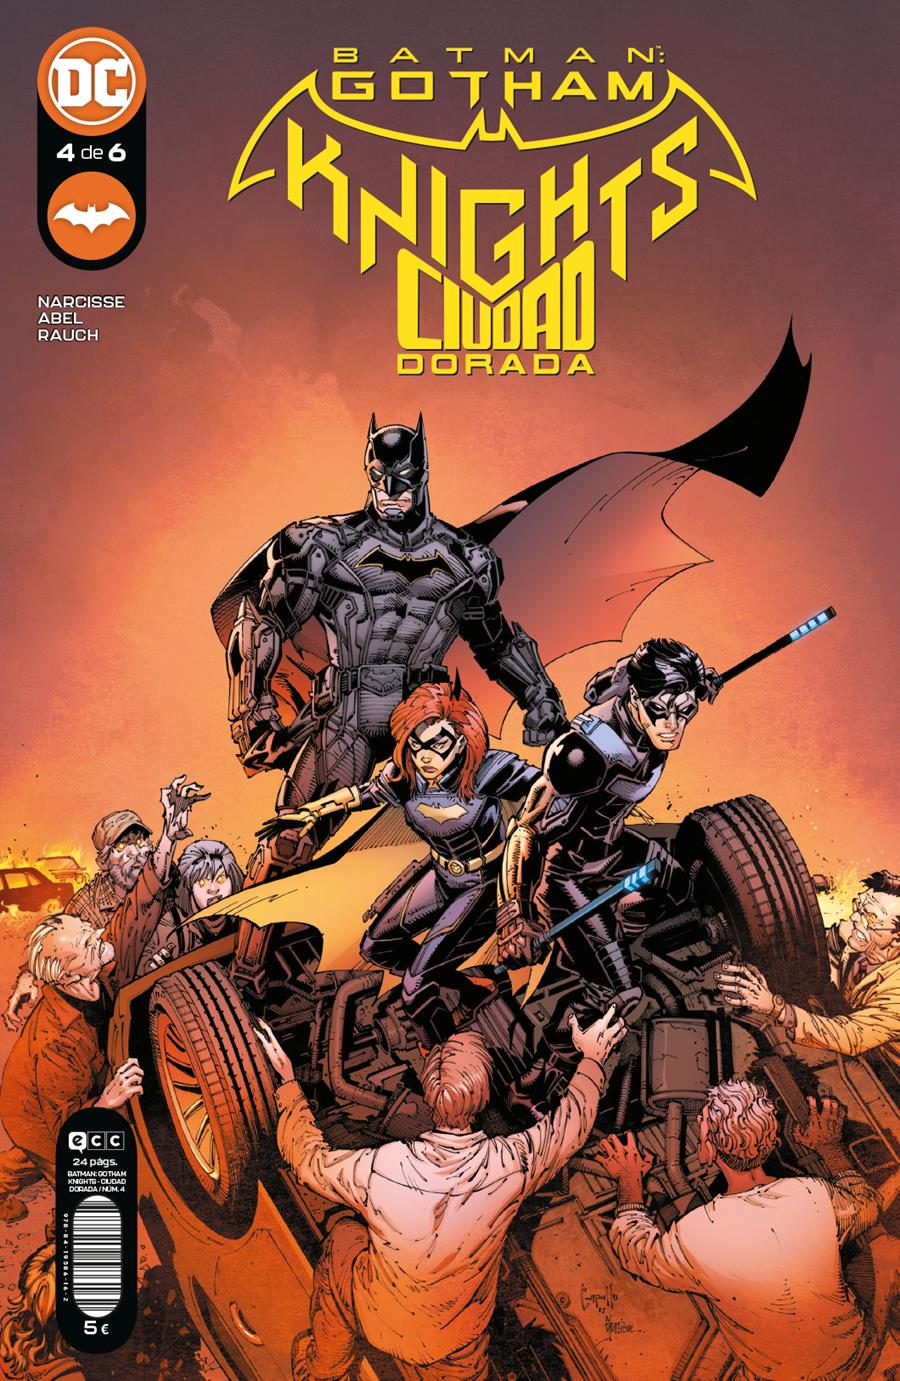 Batman: Gotham Knights - Ciudad dorada núm. 4 de 6 | N0123-ECC07 | Abel / Evan Narcisse | Terra de Còmic - Tu tienda de cómics online especializada en cómics, manga y merchandising